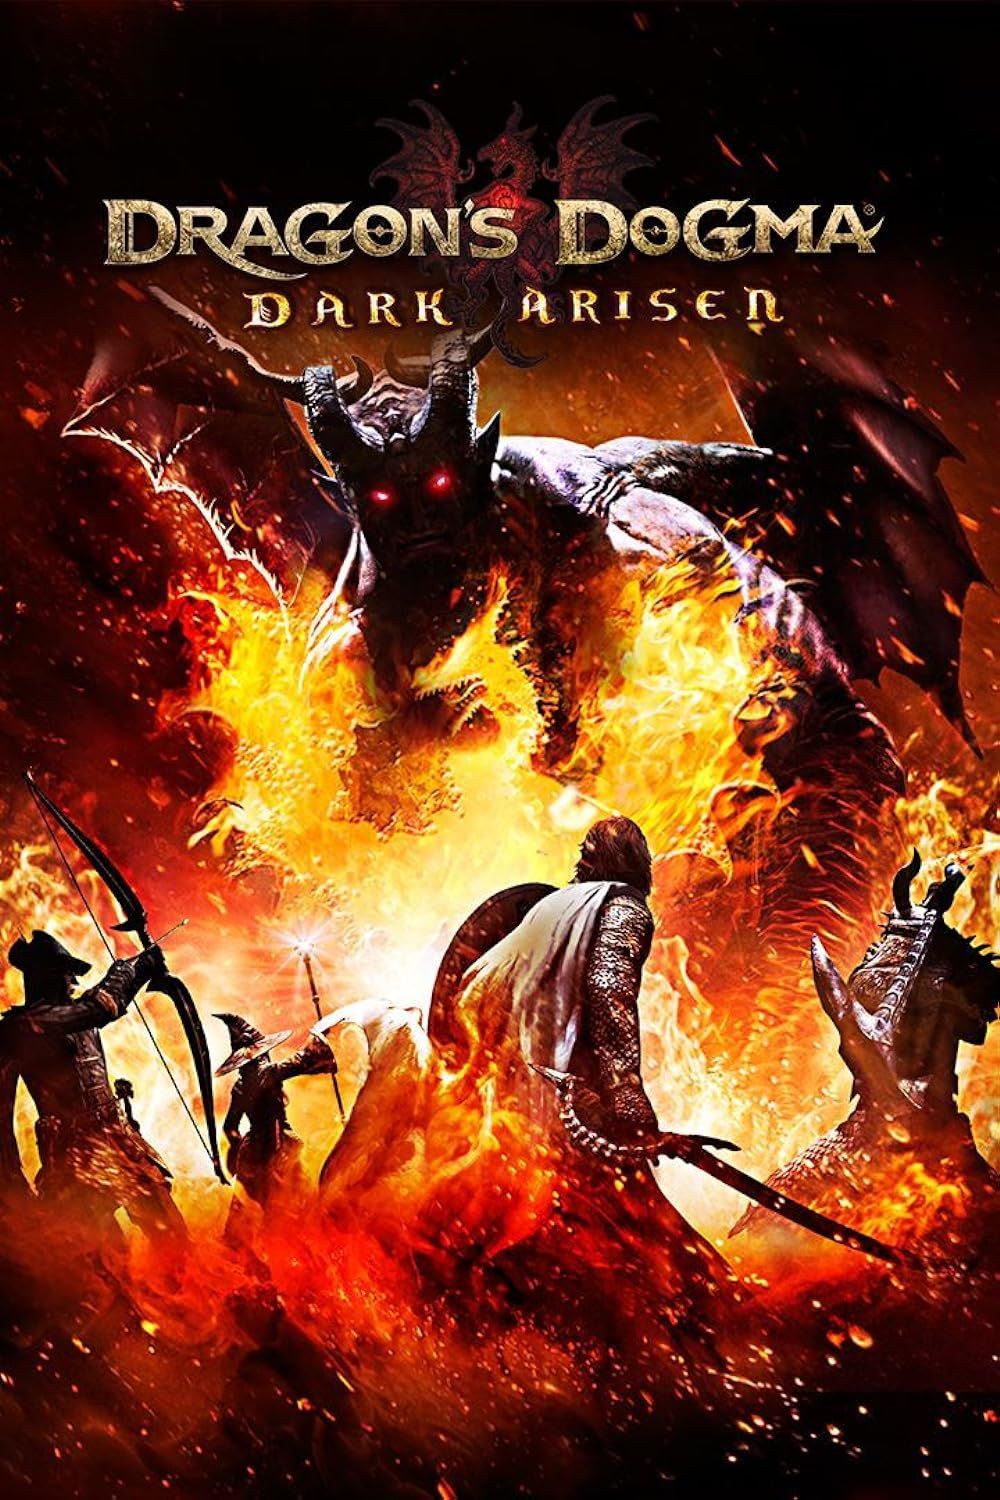 Dragon's Dogma Dark Arisen video game poster